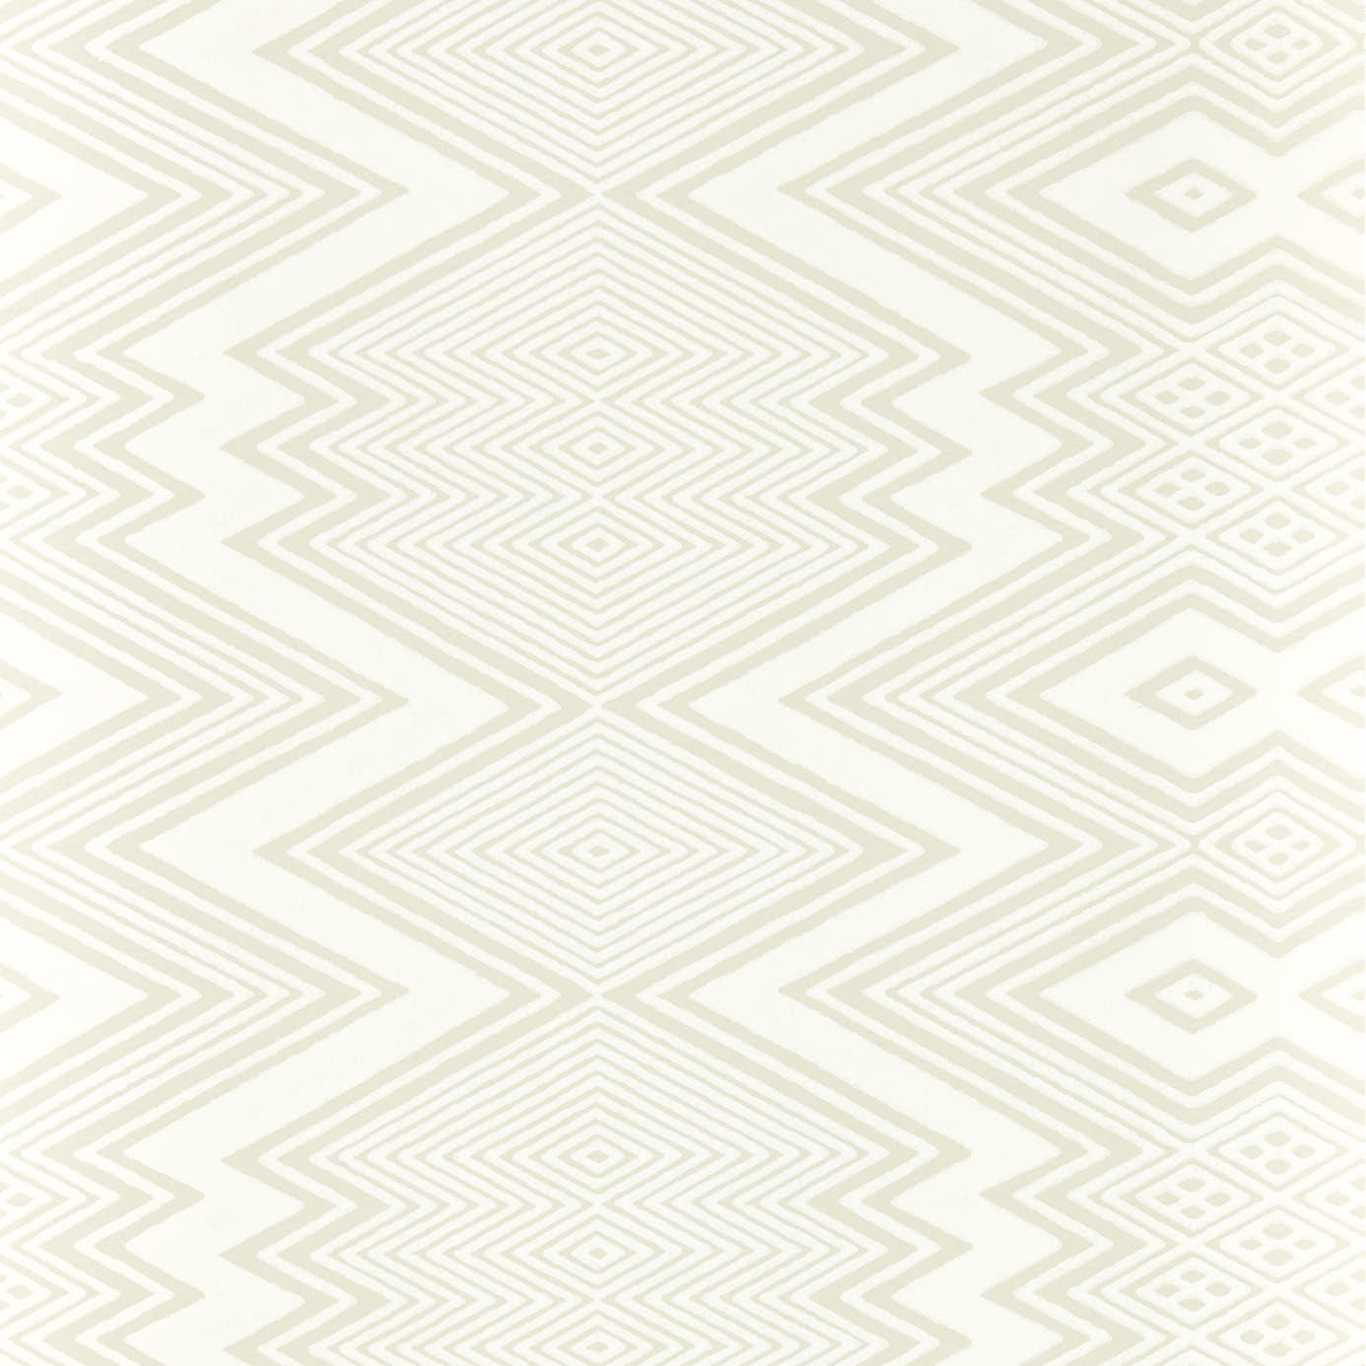 Ankara Sail Cloth/ Diffused Light Wallpaper HQN2112847 by Harlequin